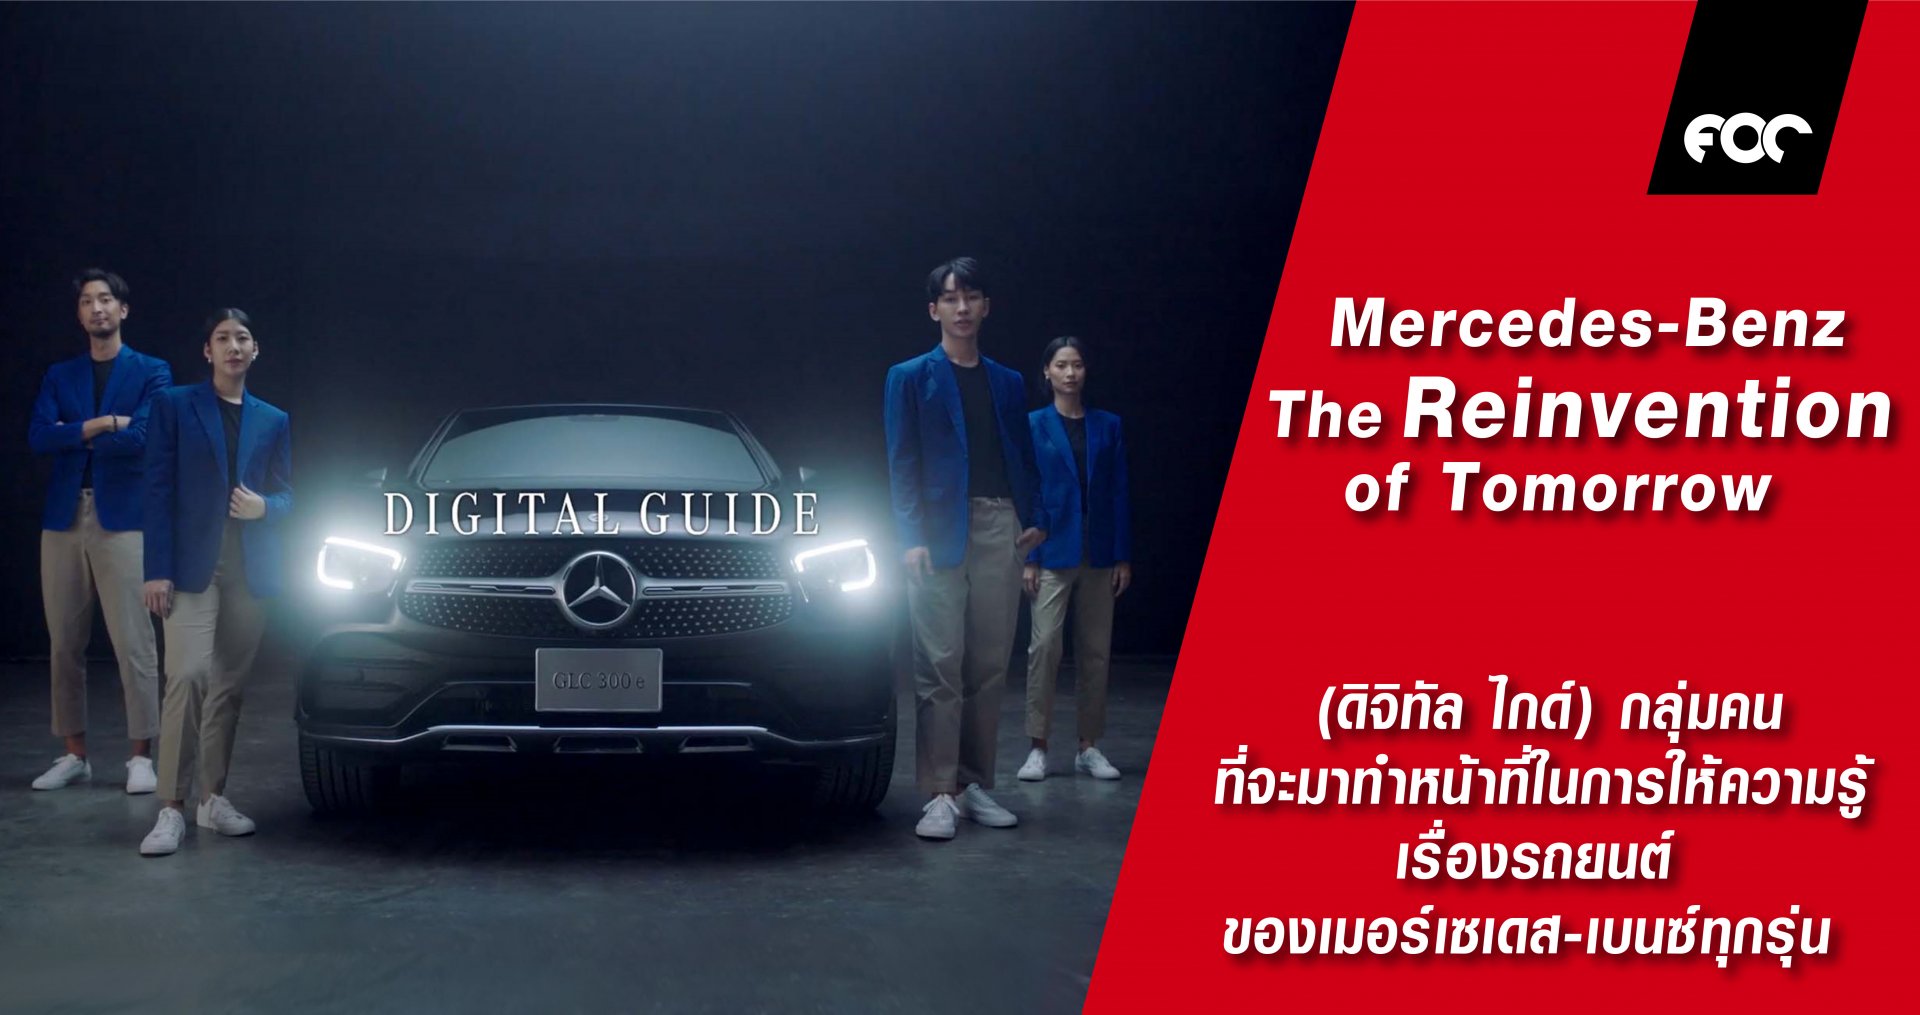 Mercedes-Benz: The Reinvention of Tomorrow ค่านิยมใหม่และแนวคิดใหม่ของงานแสดงรถยนต์